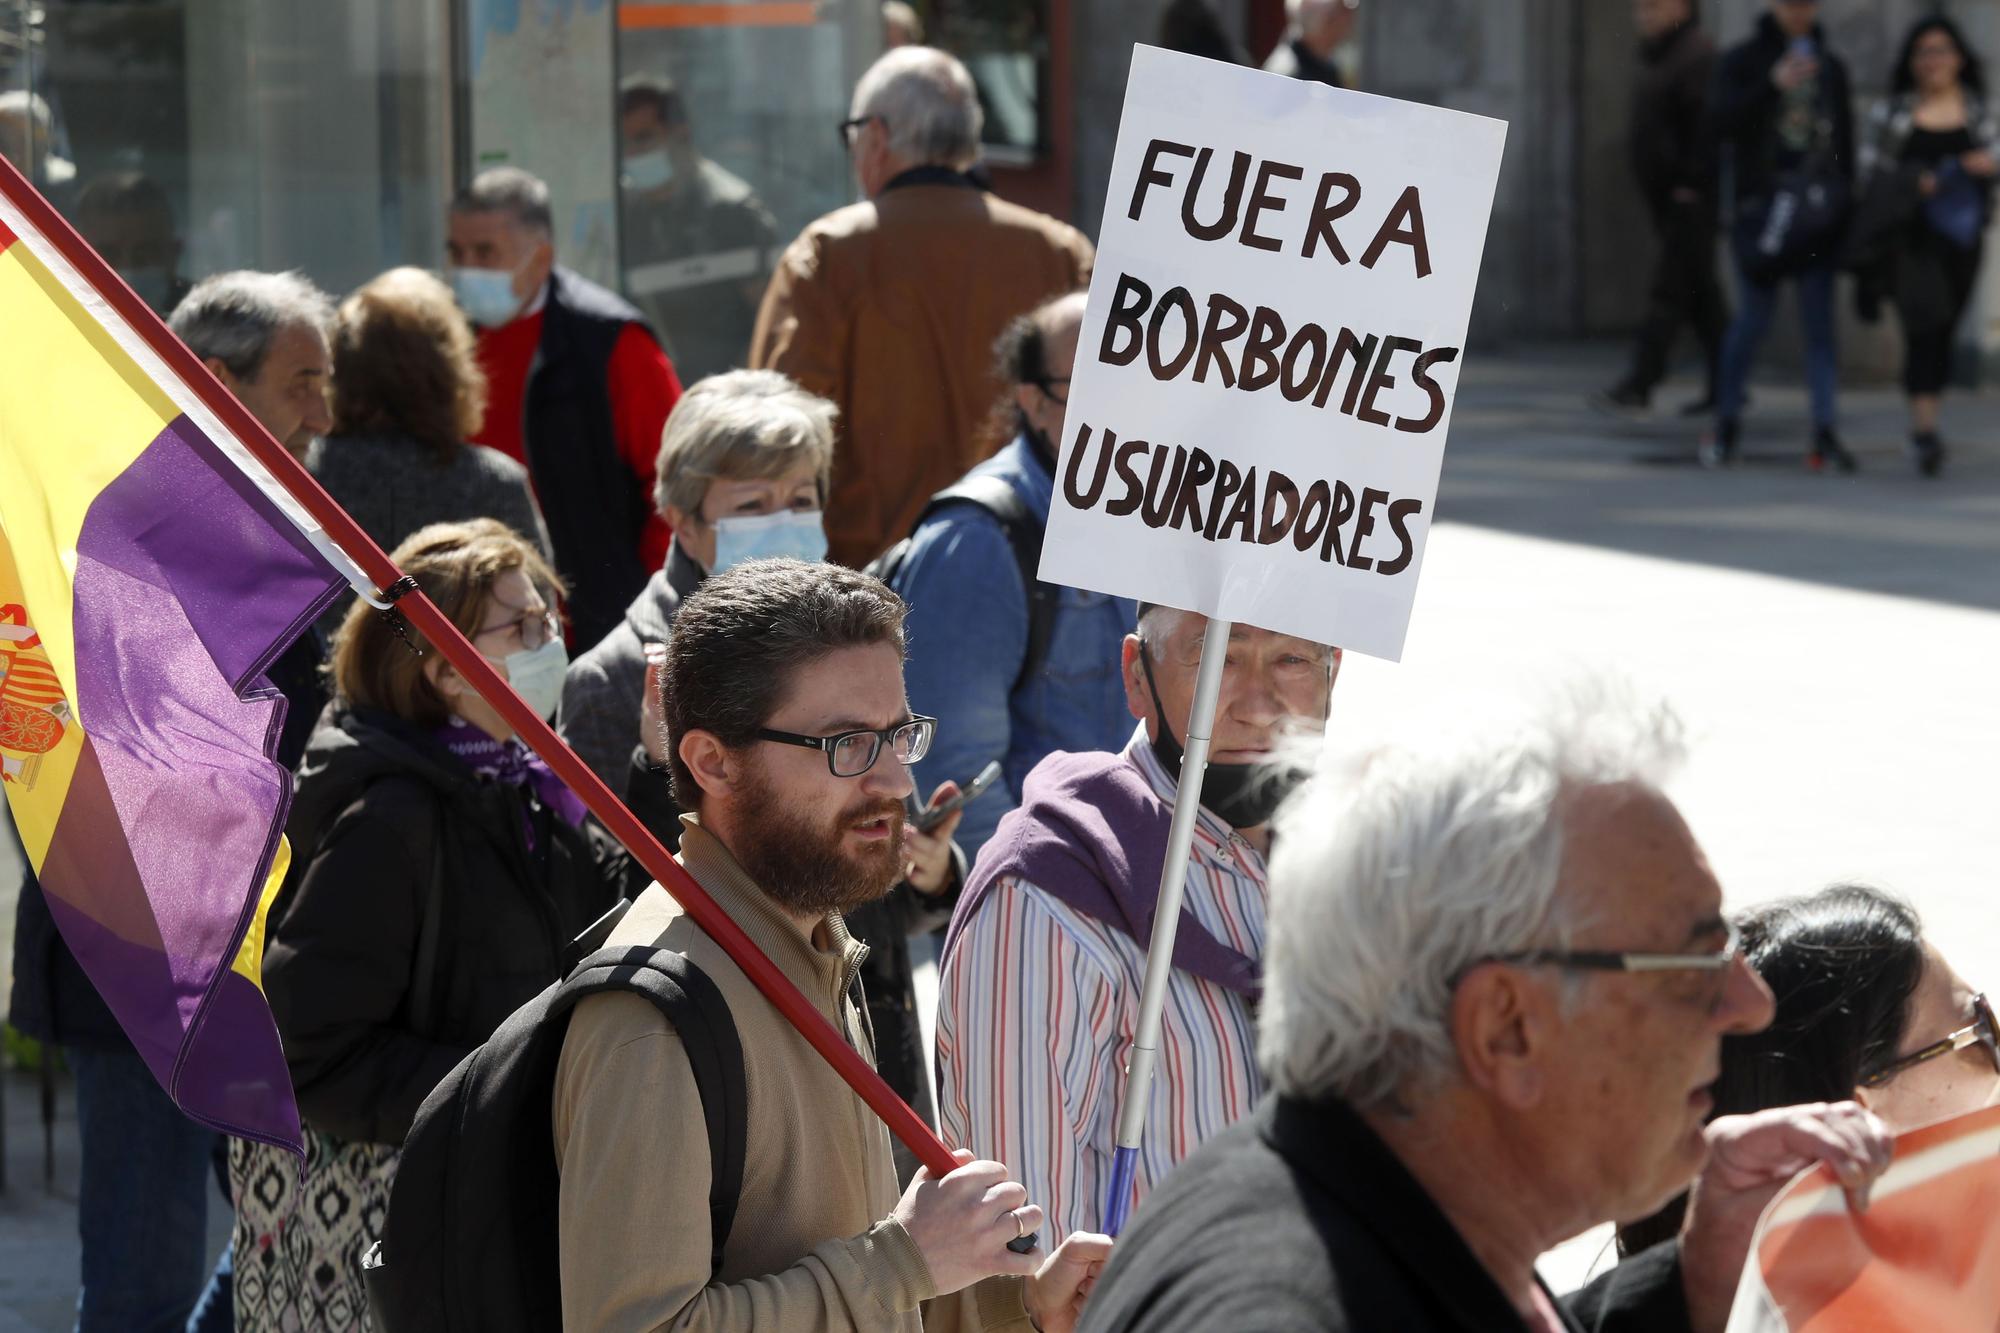 Los republicanos toman las calles de Vigo para exigir el final de la monarquía